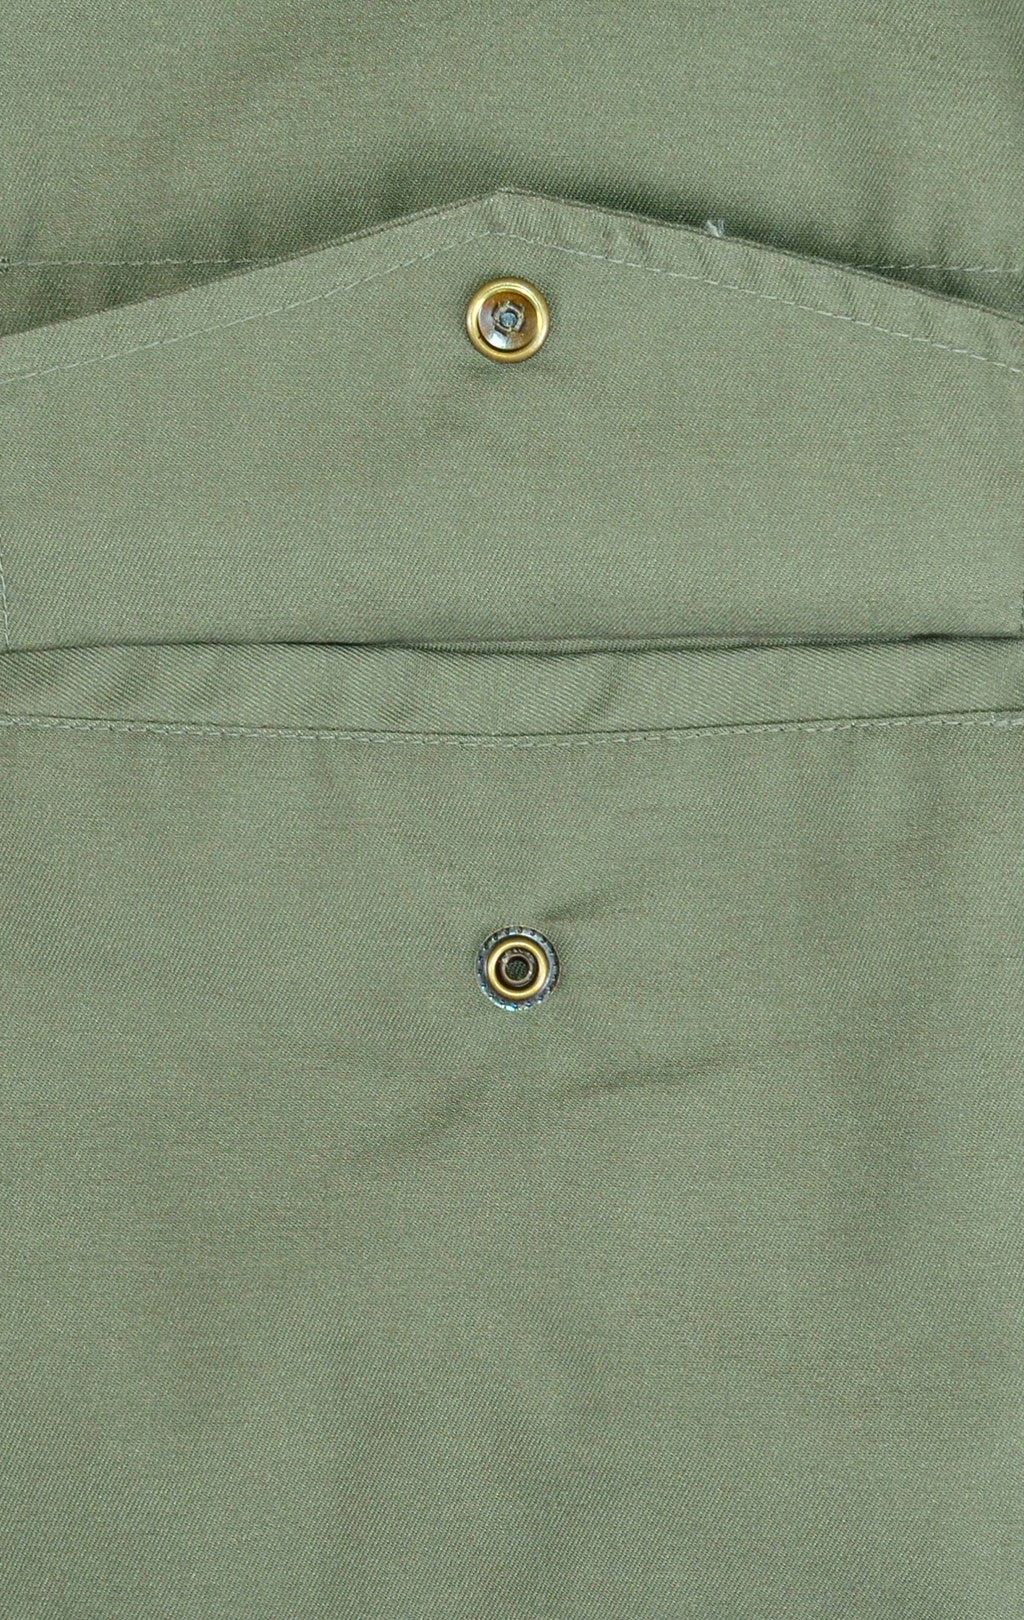 Куртка Surplus M-65 с подстёжкой olive 